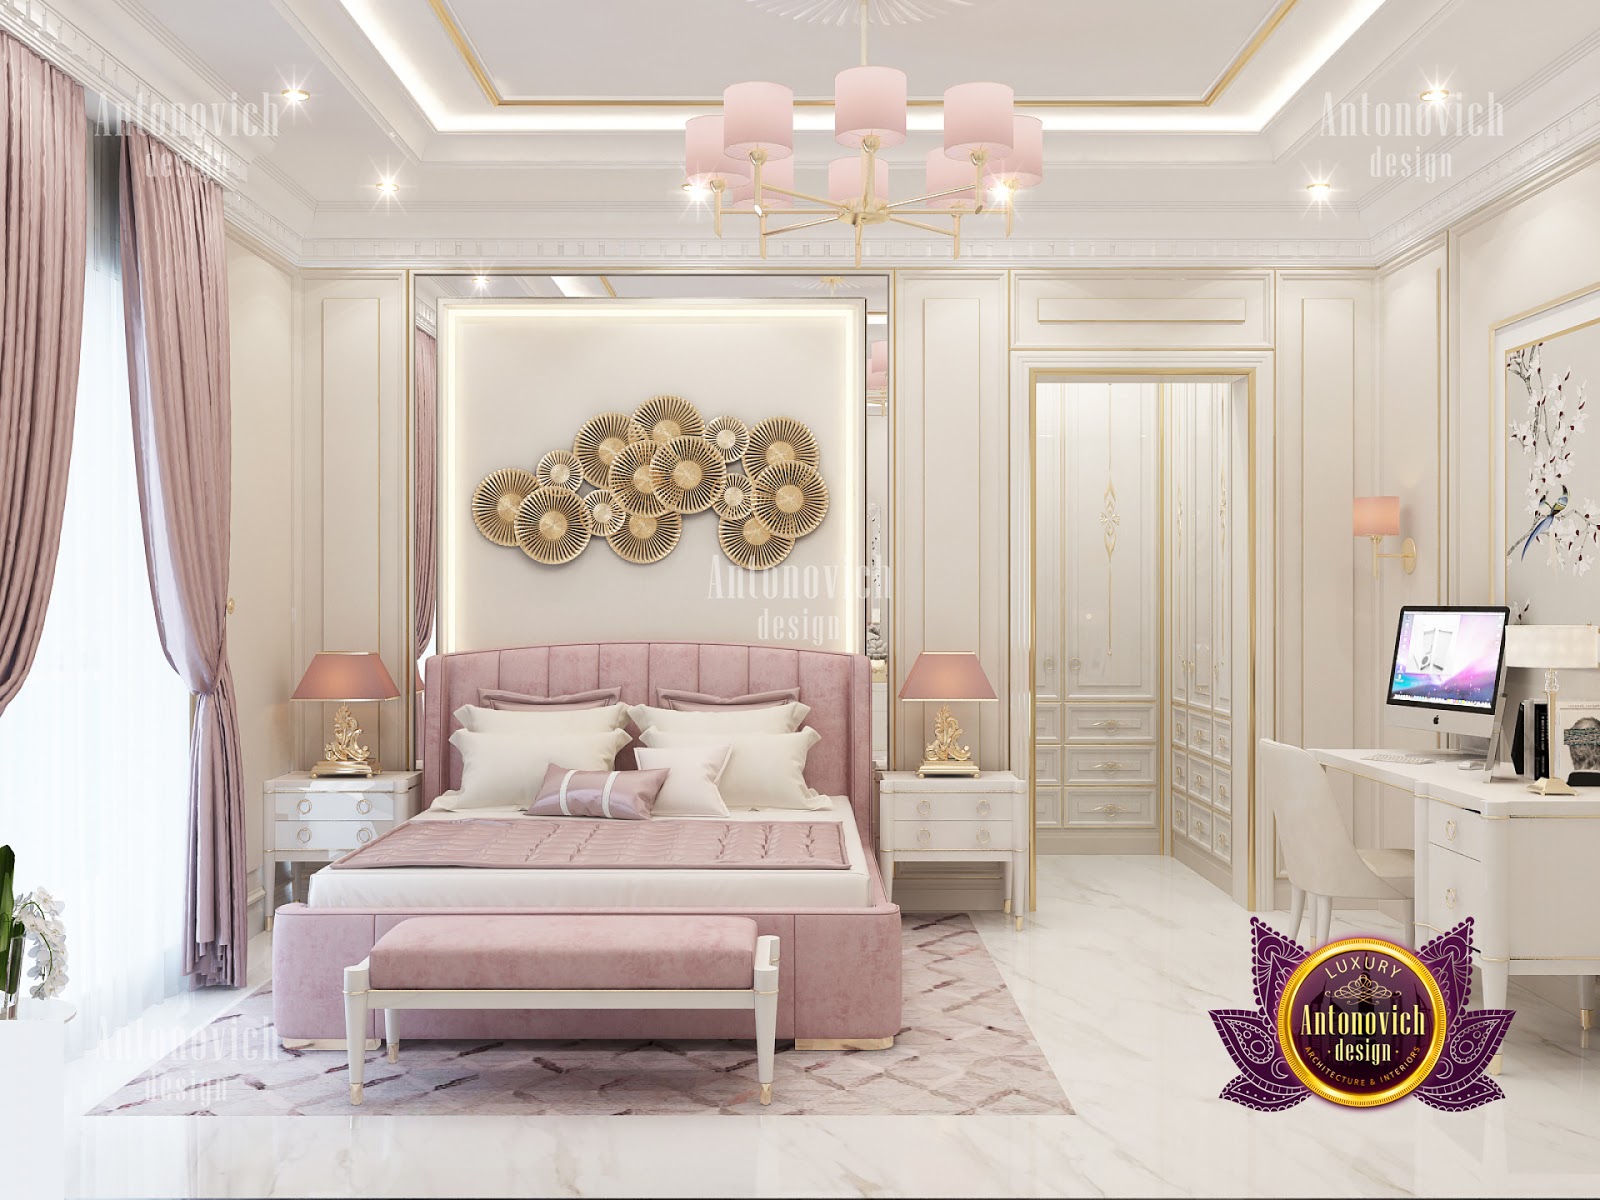 About Luxury Antonovich Design Architecture And Interiors Company Headquartered In Dubai Uae Biography